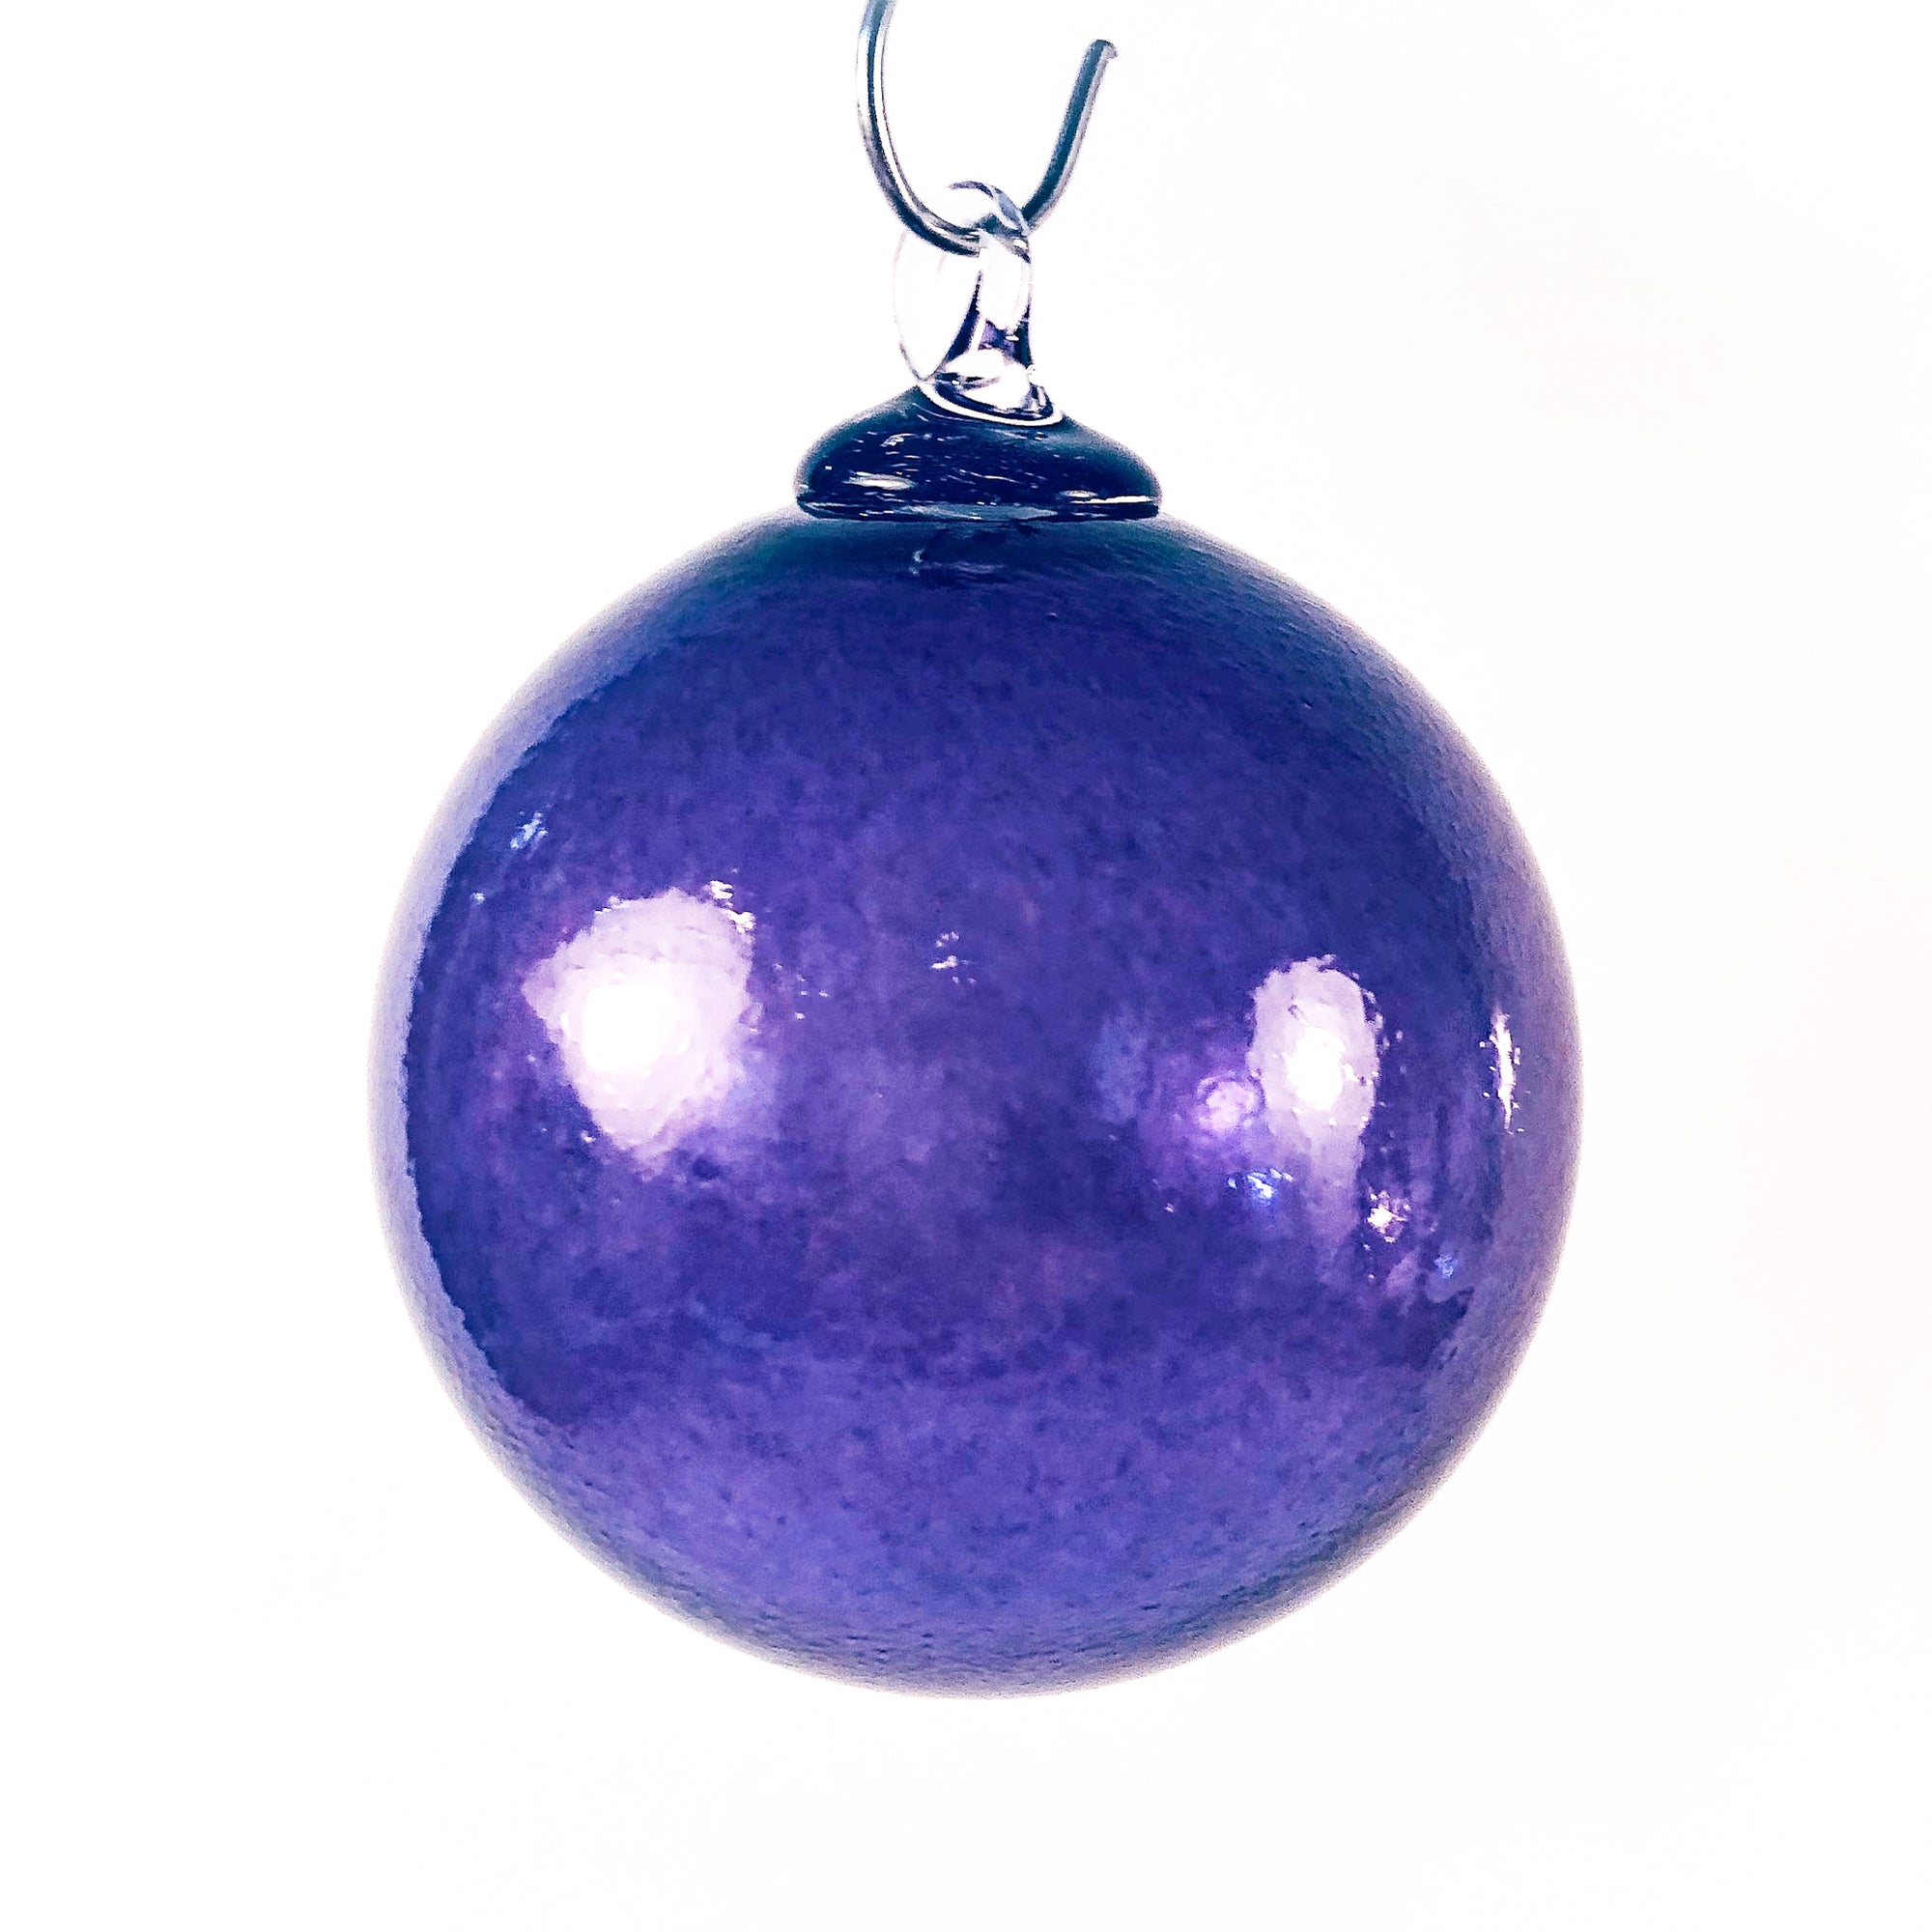 Small Purple Glass Ball Ornament